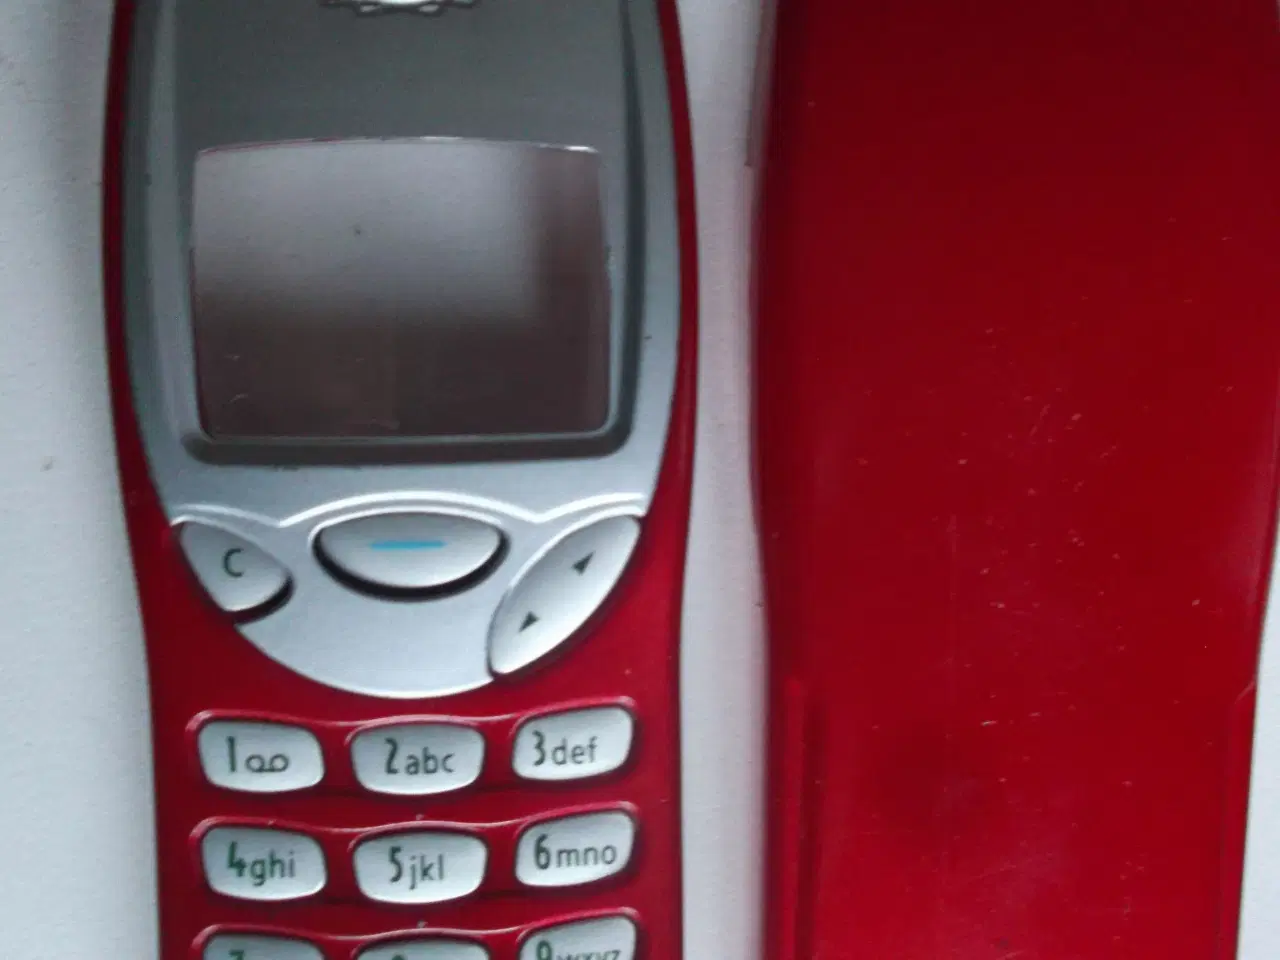 Billede 1 - Cover og tastatur til Nokia 3210 mobiltelefon